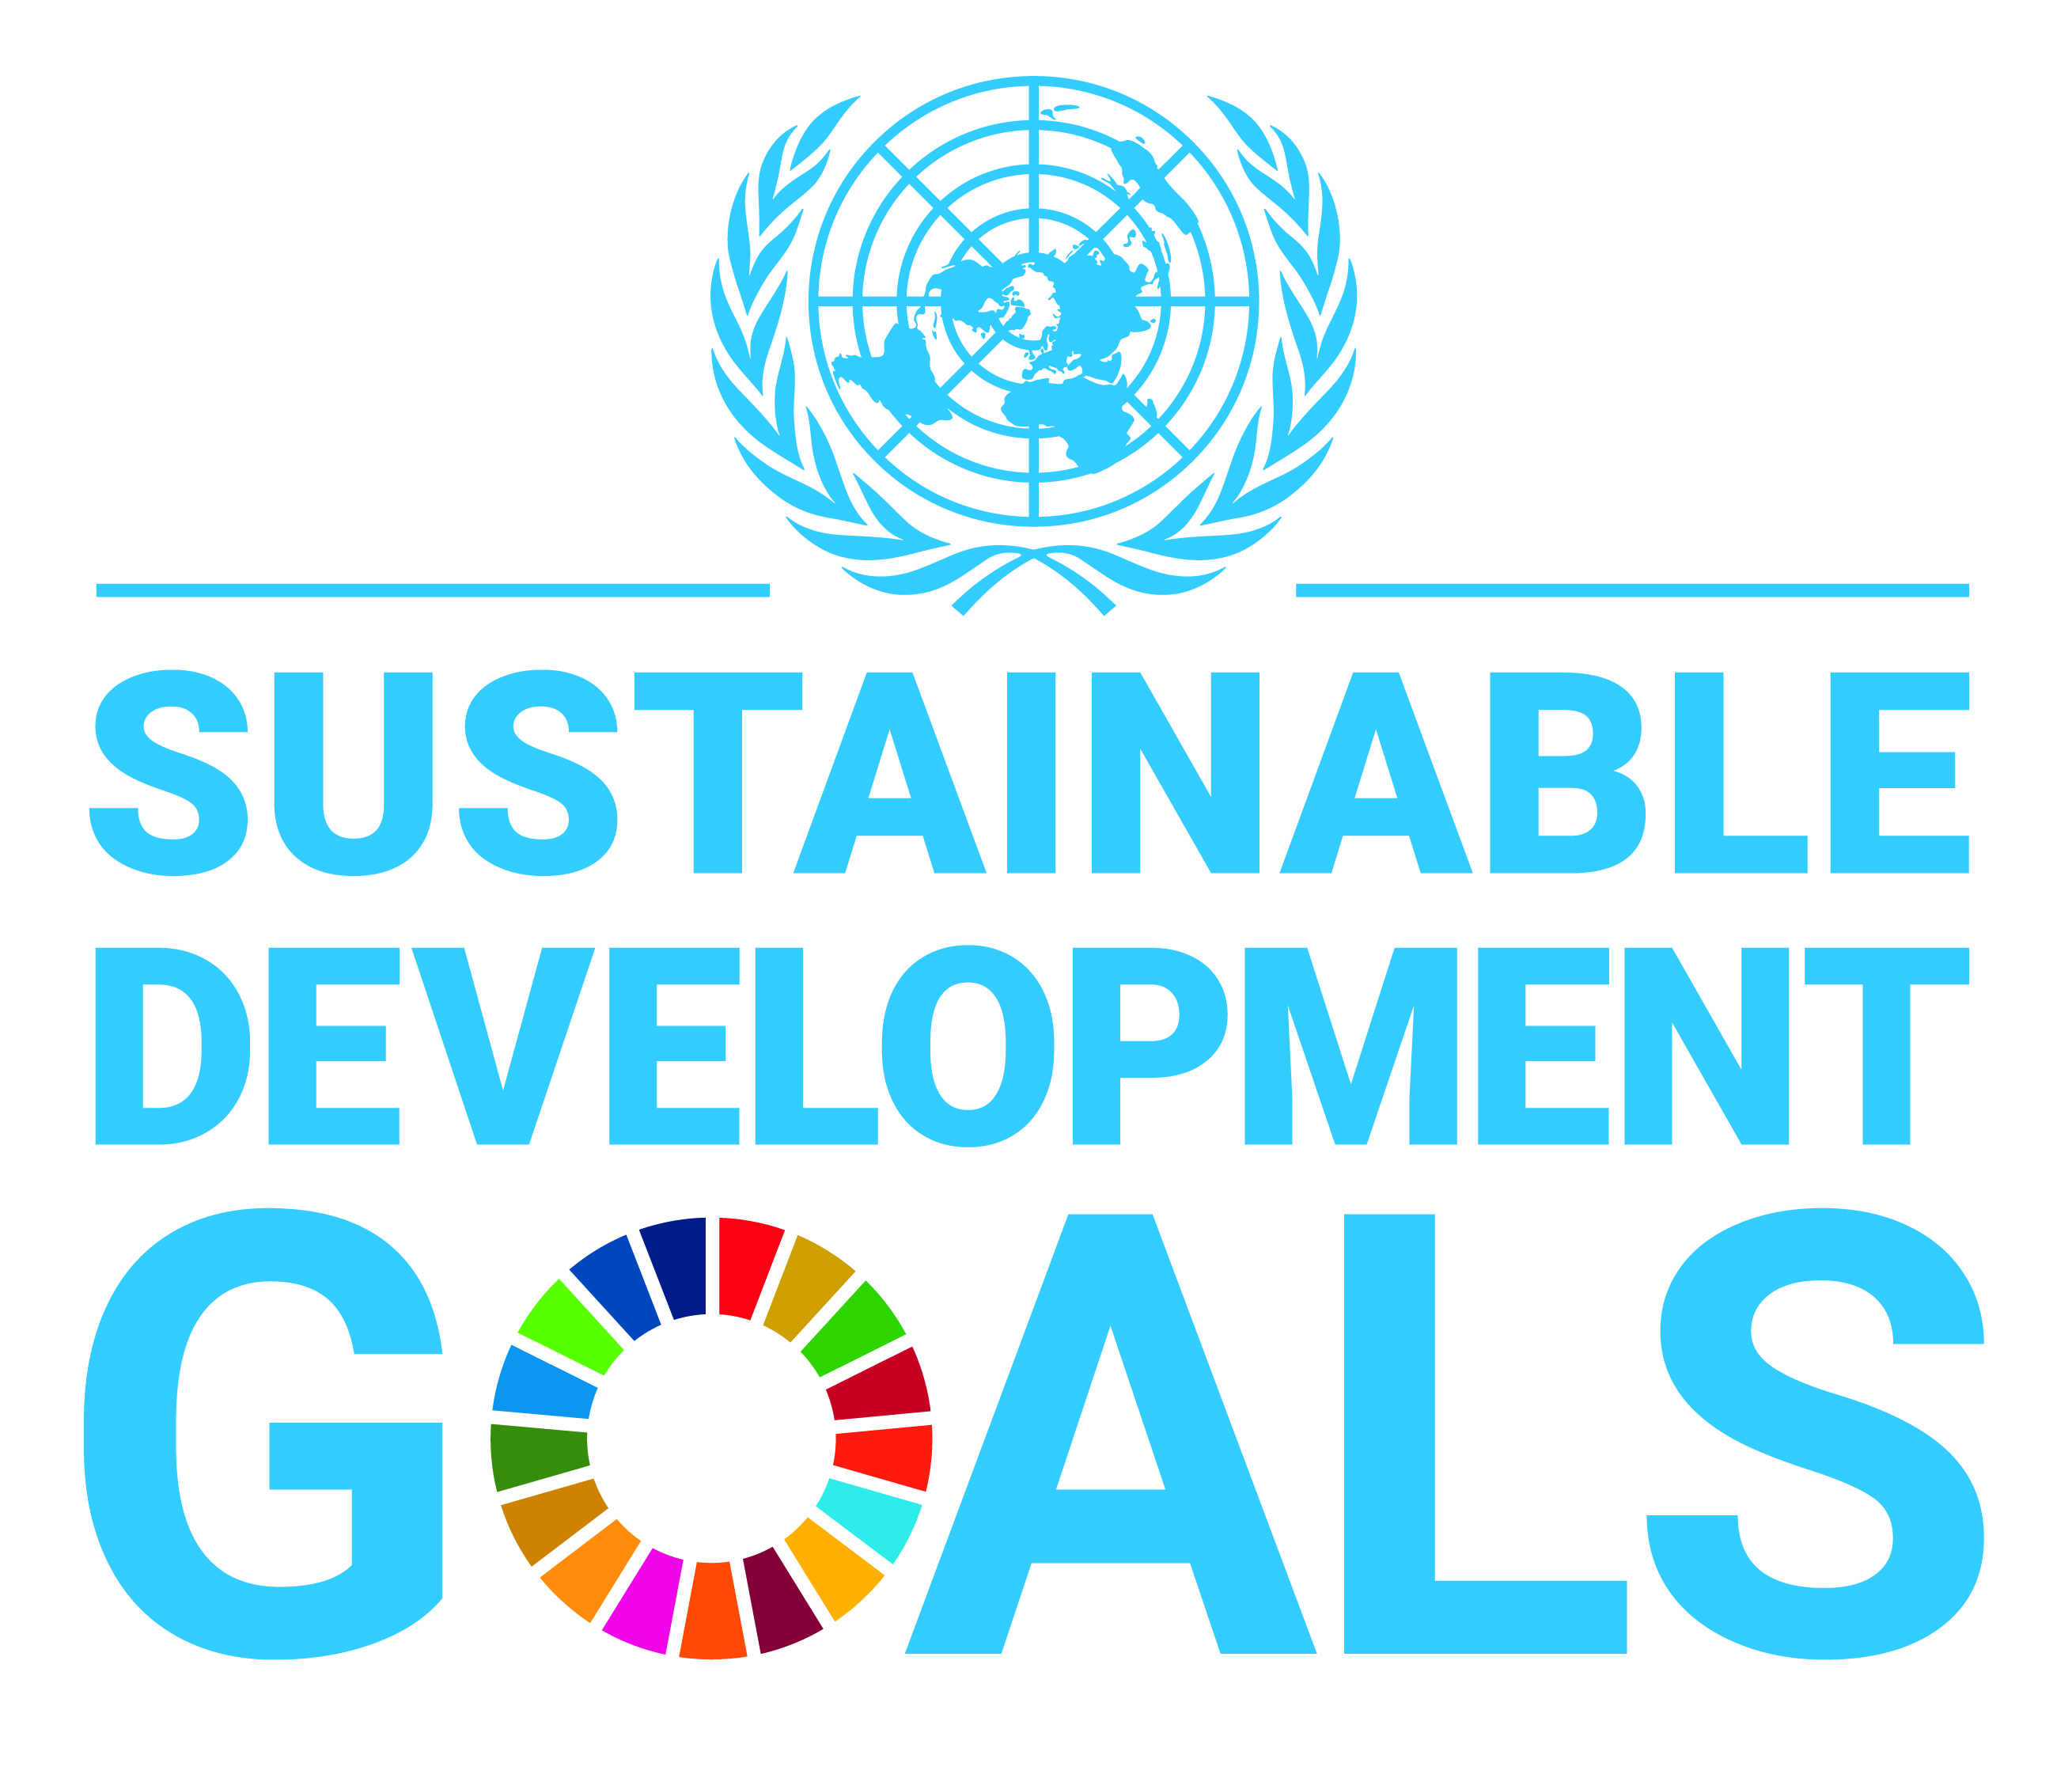 Objectivos de desarrollo sostenible.